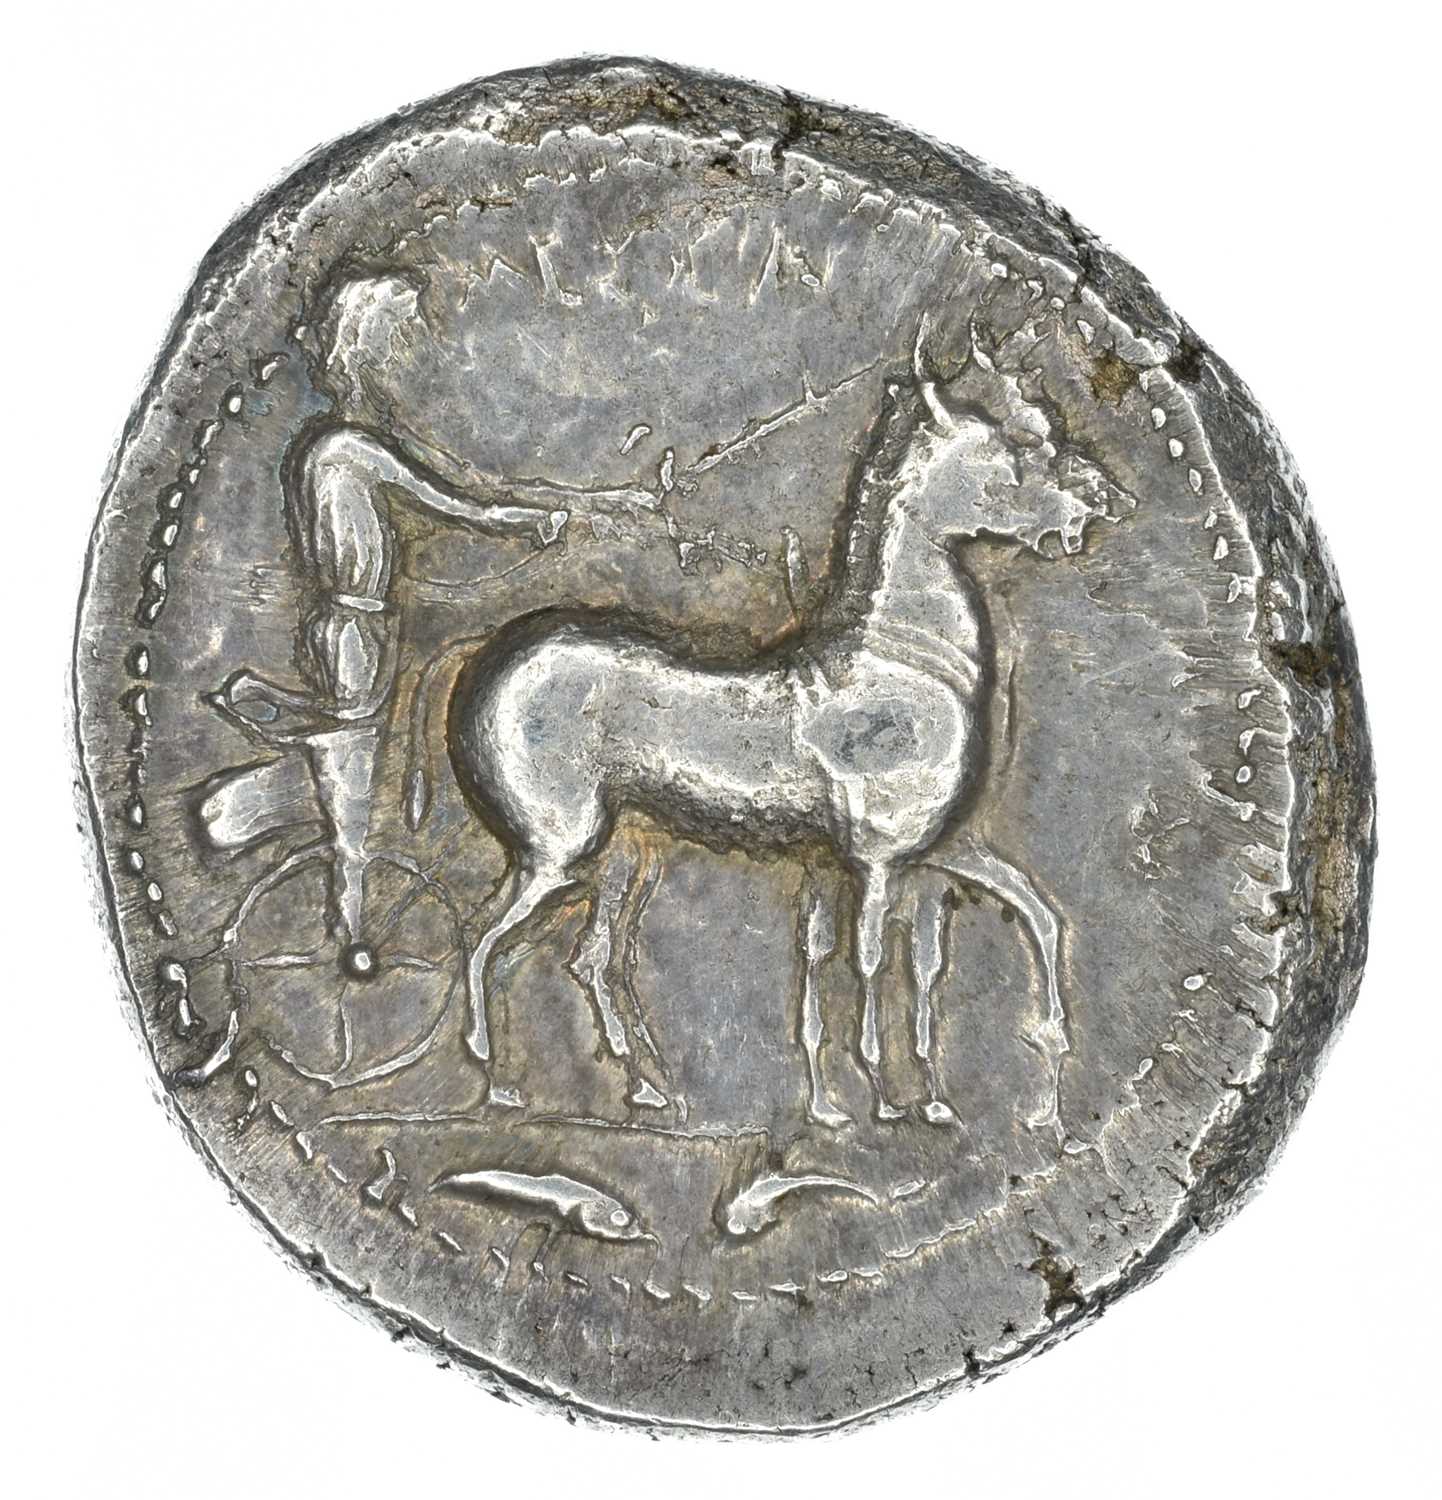 Lot 2 - Sicily, Messana, silver tetradrachm.